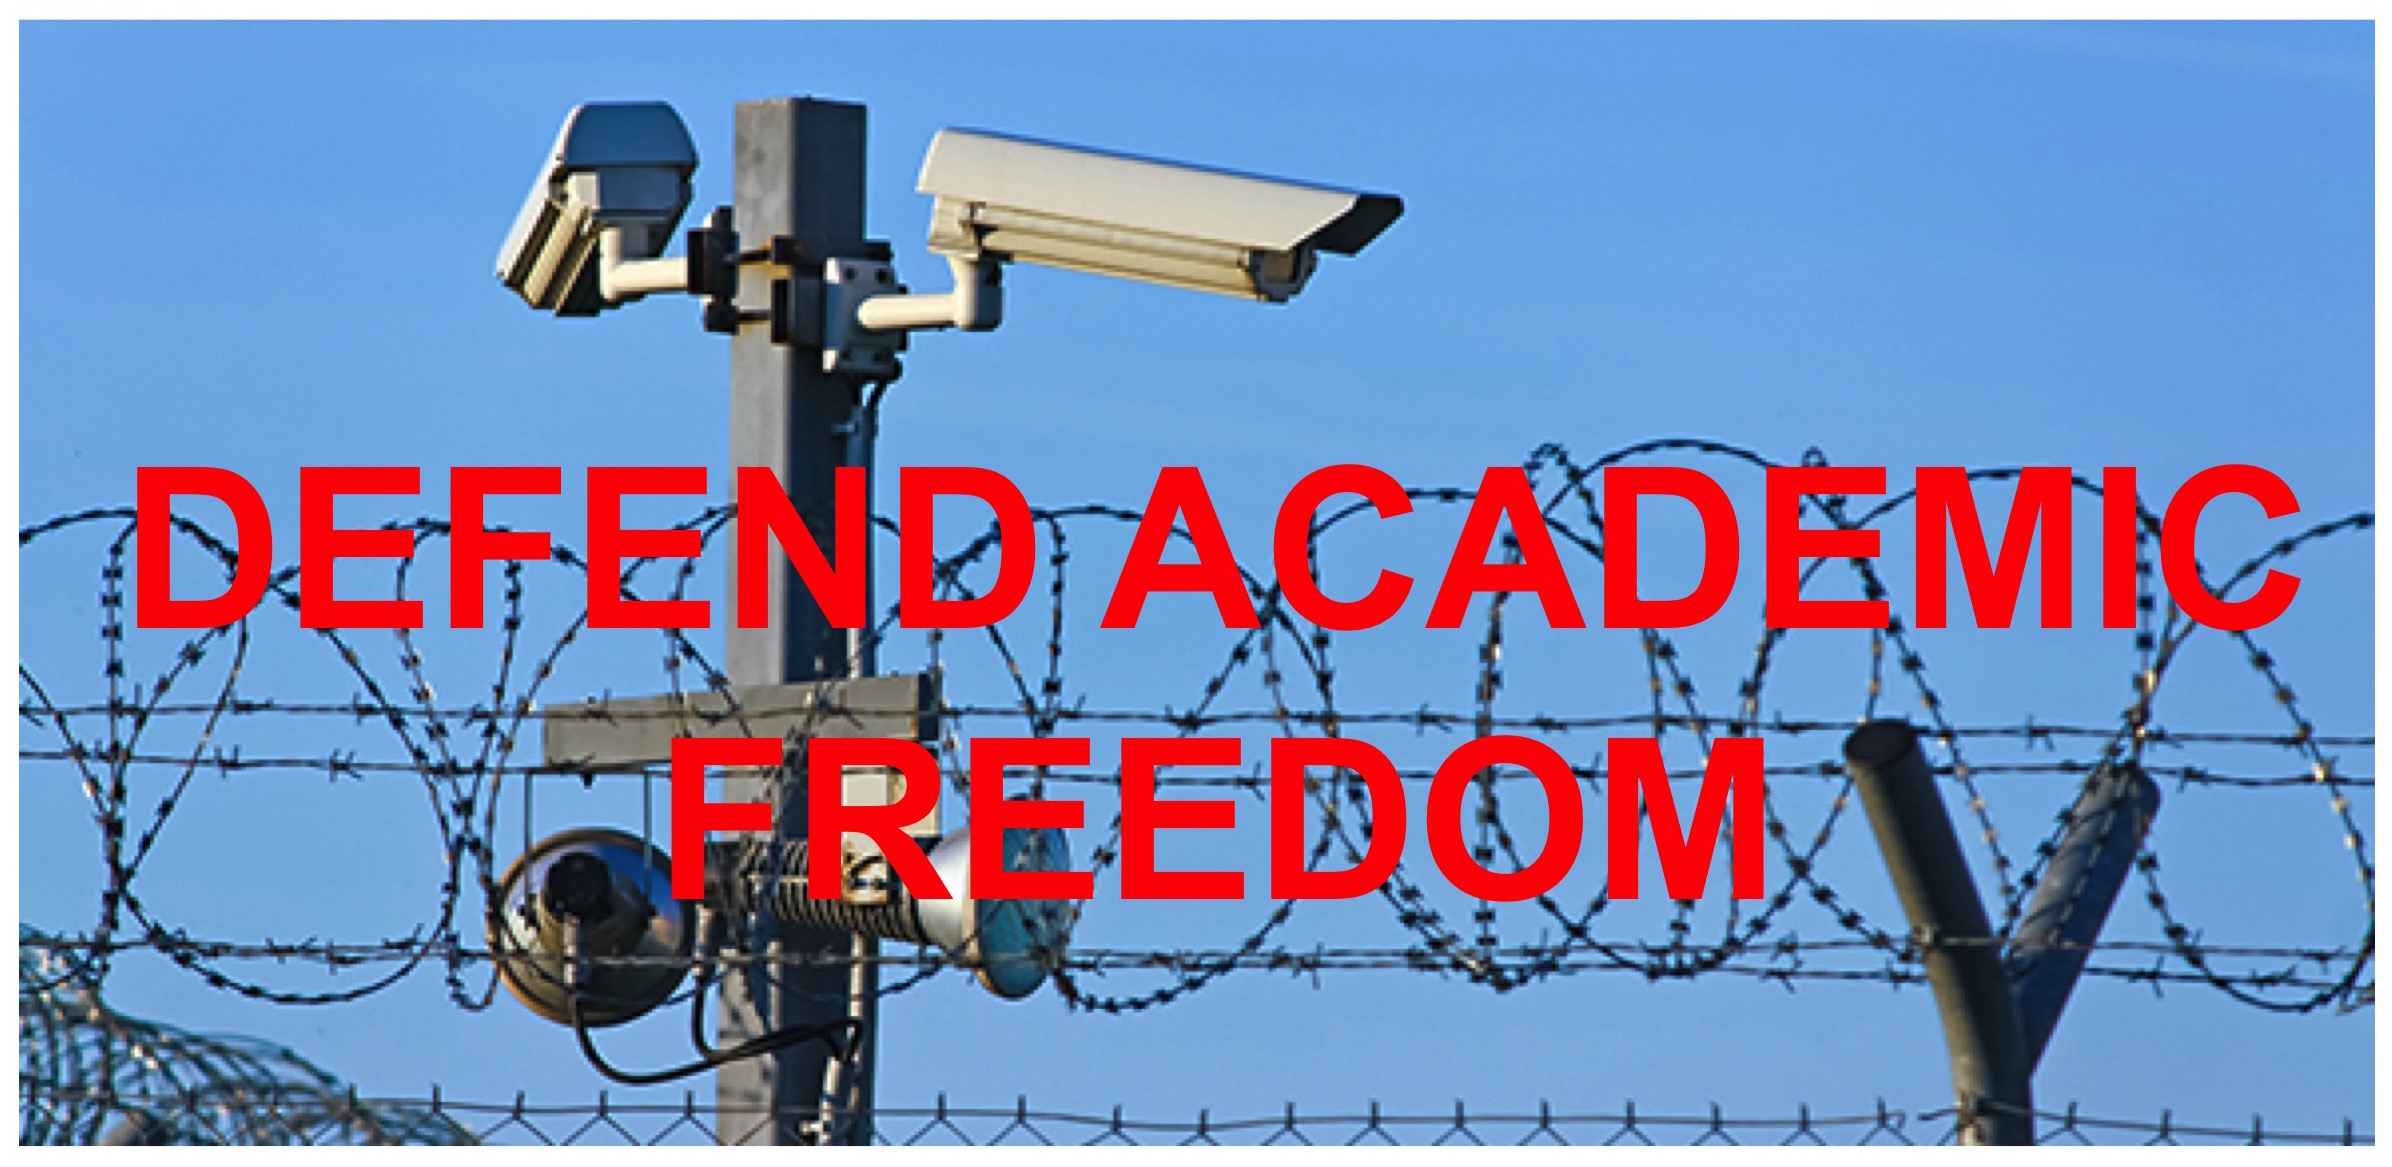 Defend_academic_freedom